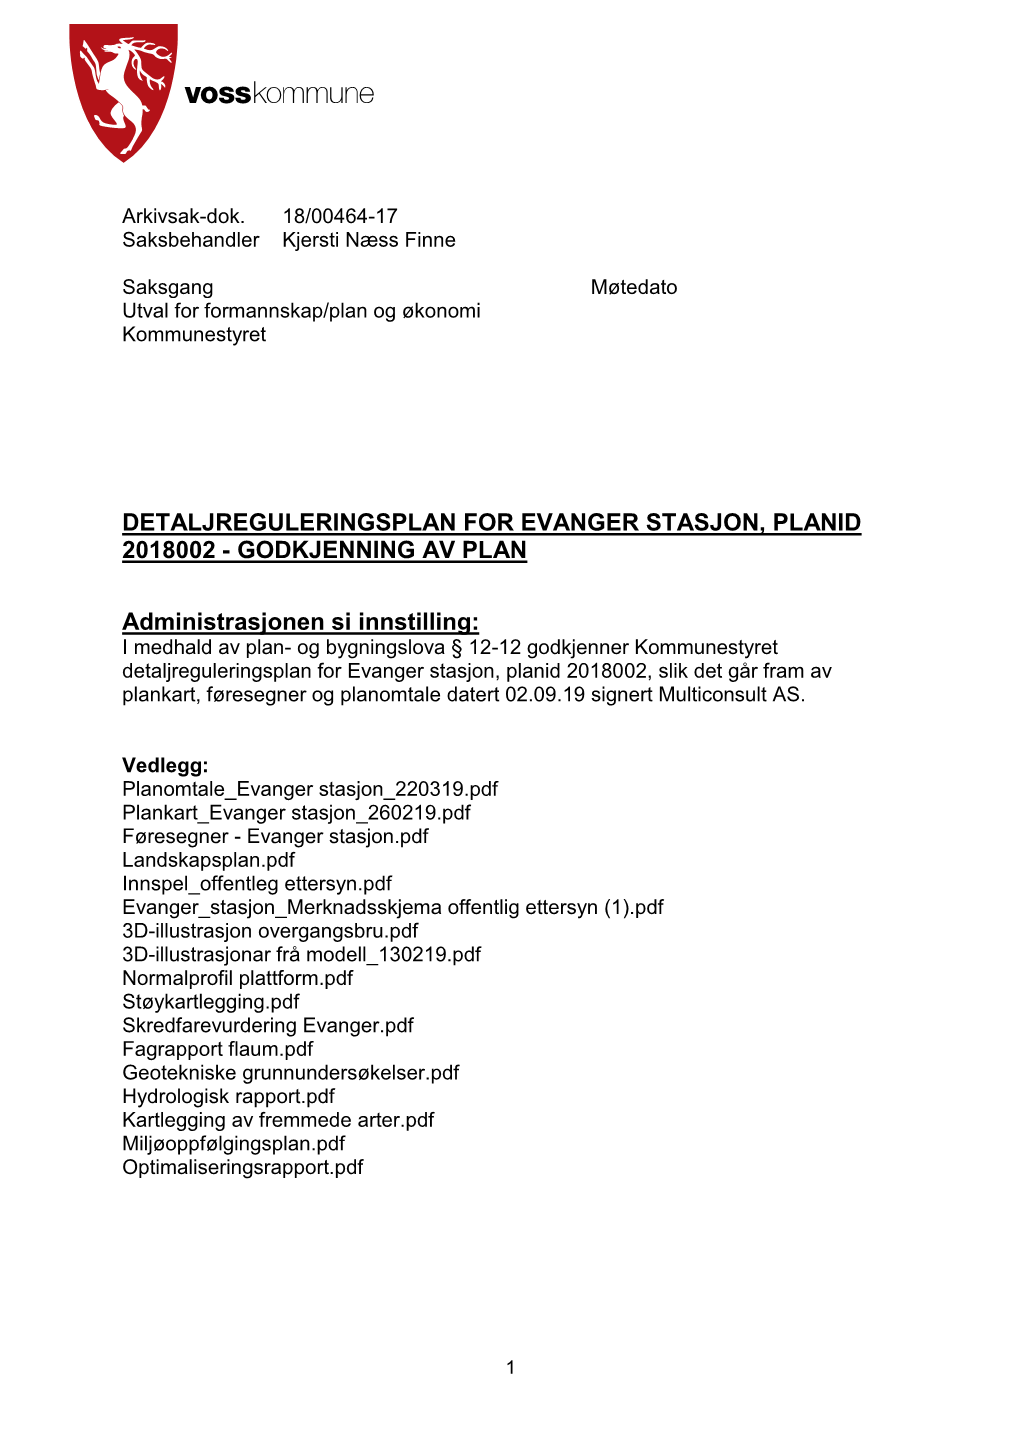 Detaljreguleringsplan for Evanger Stasjon, Planid 2018002 - Godkjenning Av Plan